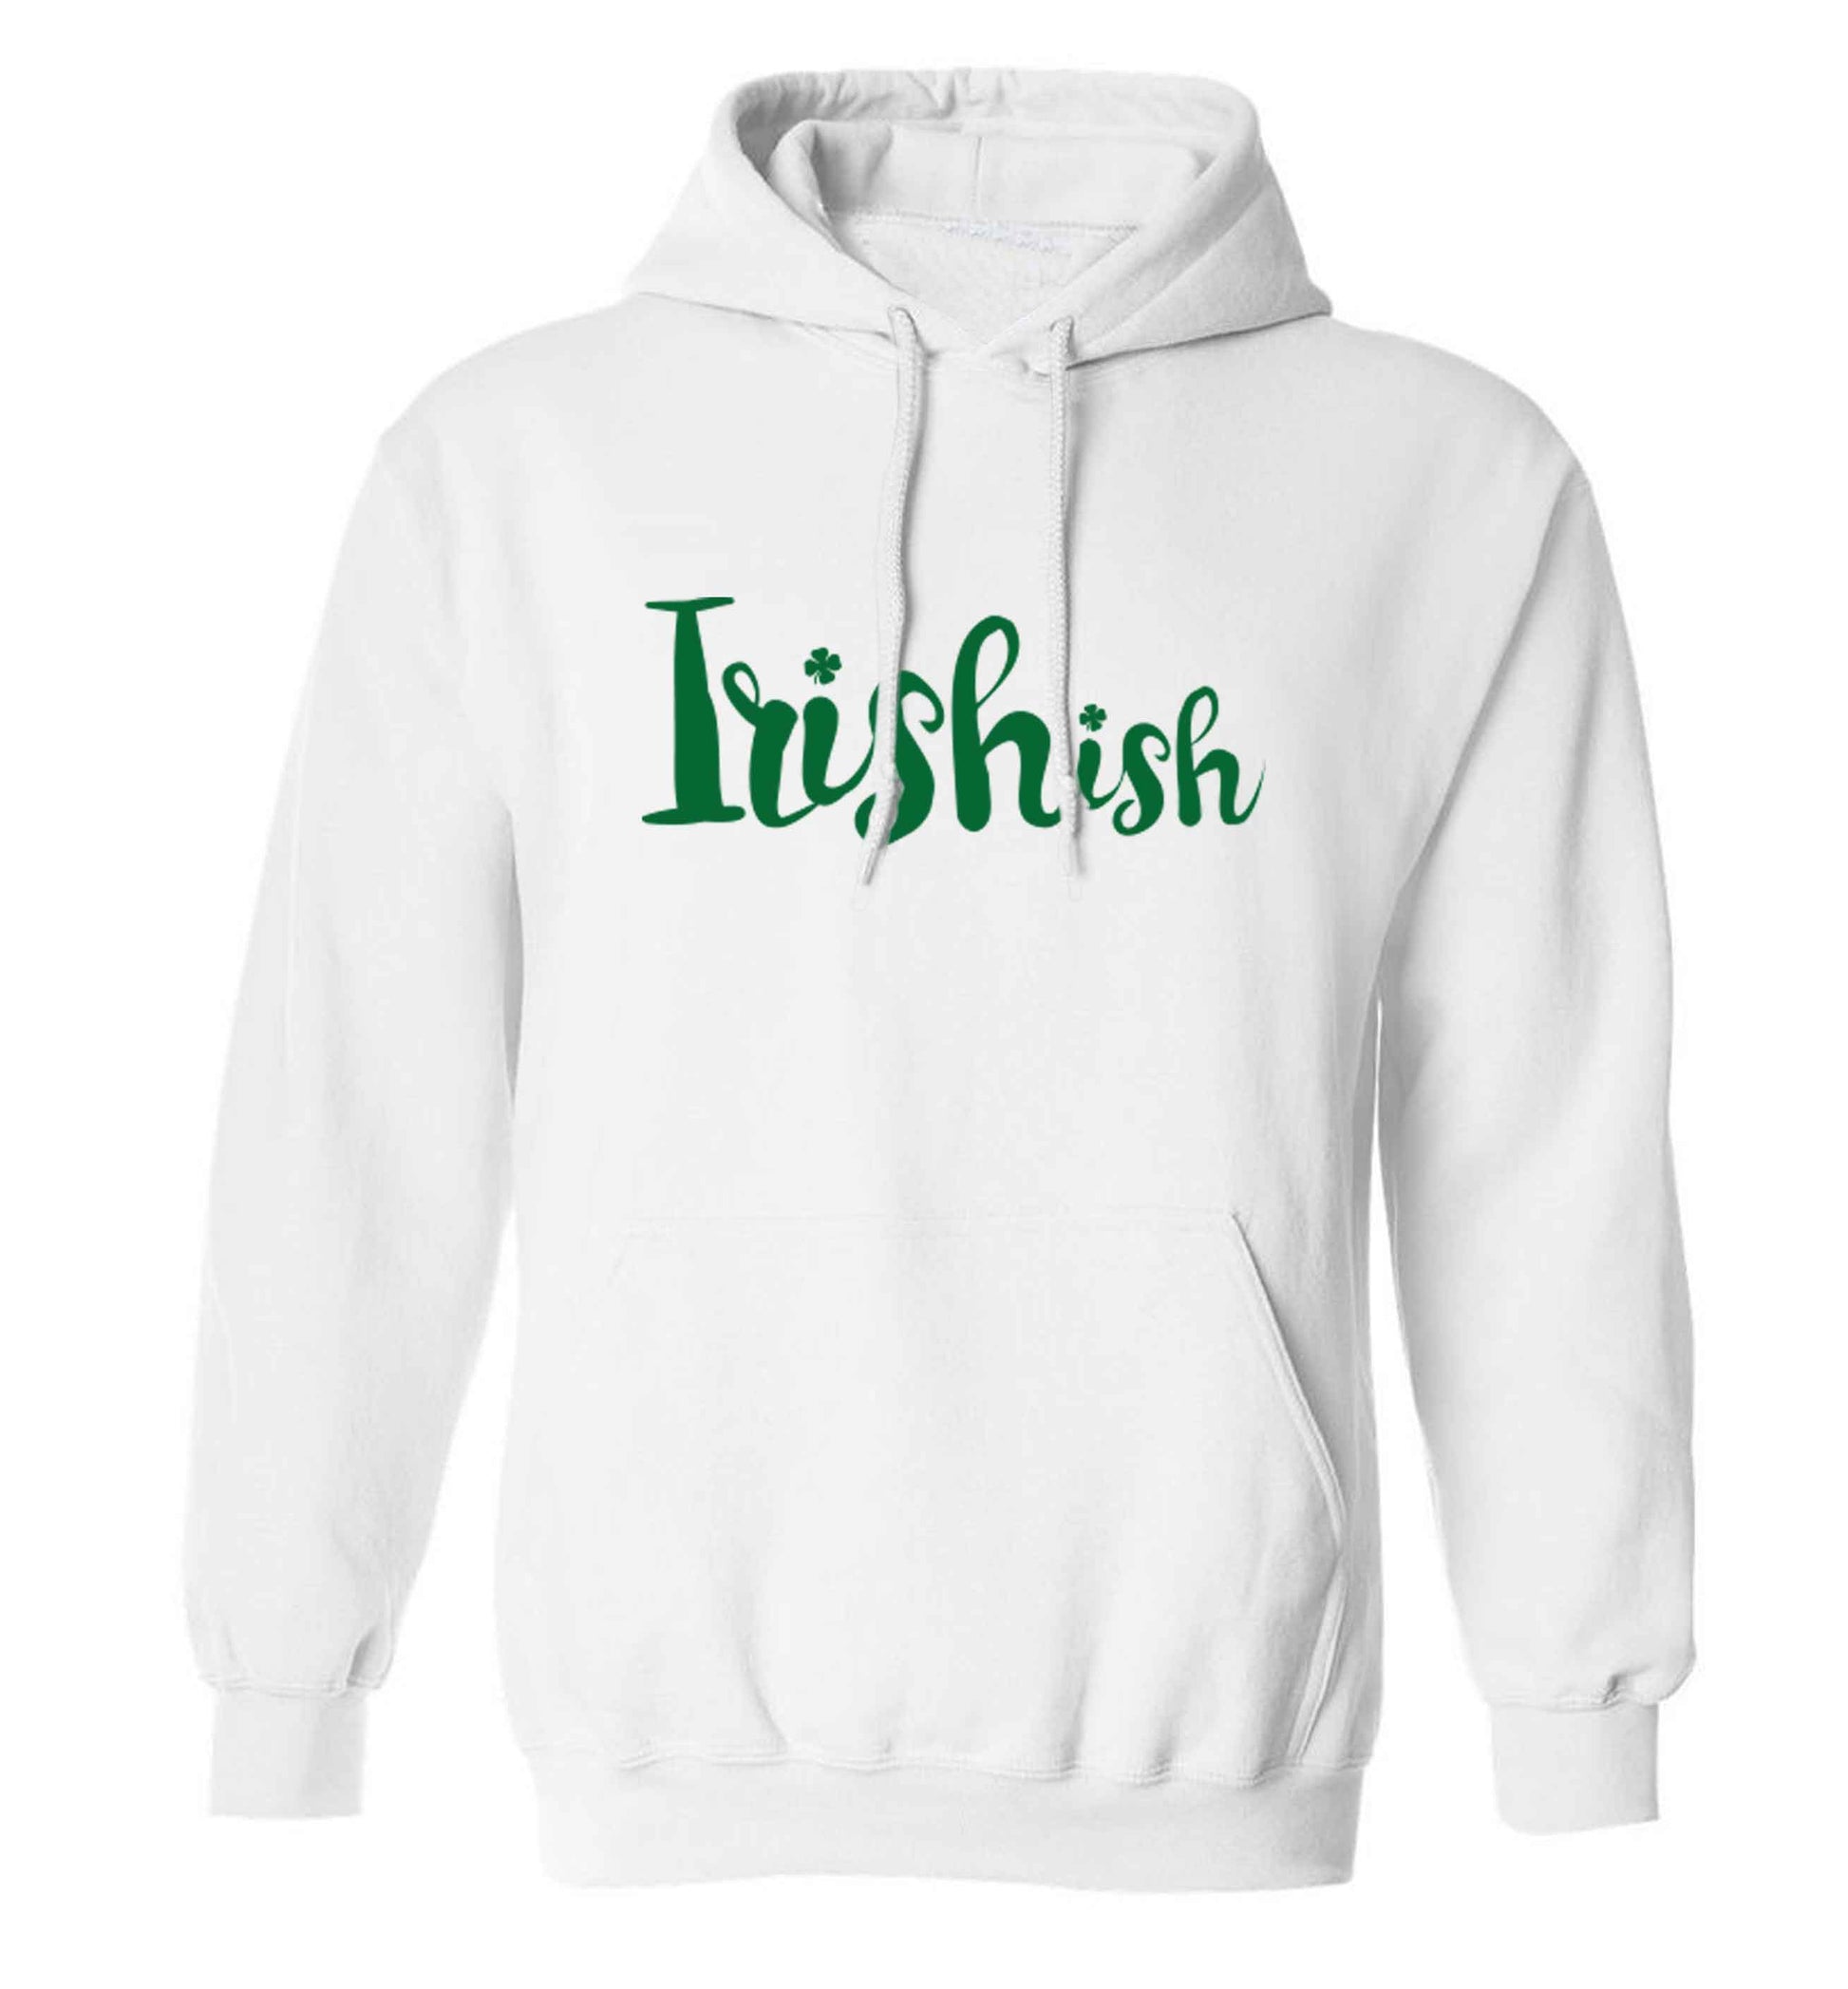 Irishish adults unisex white hoodie 2XL